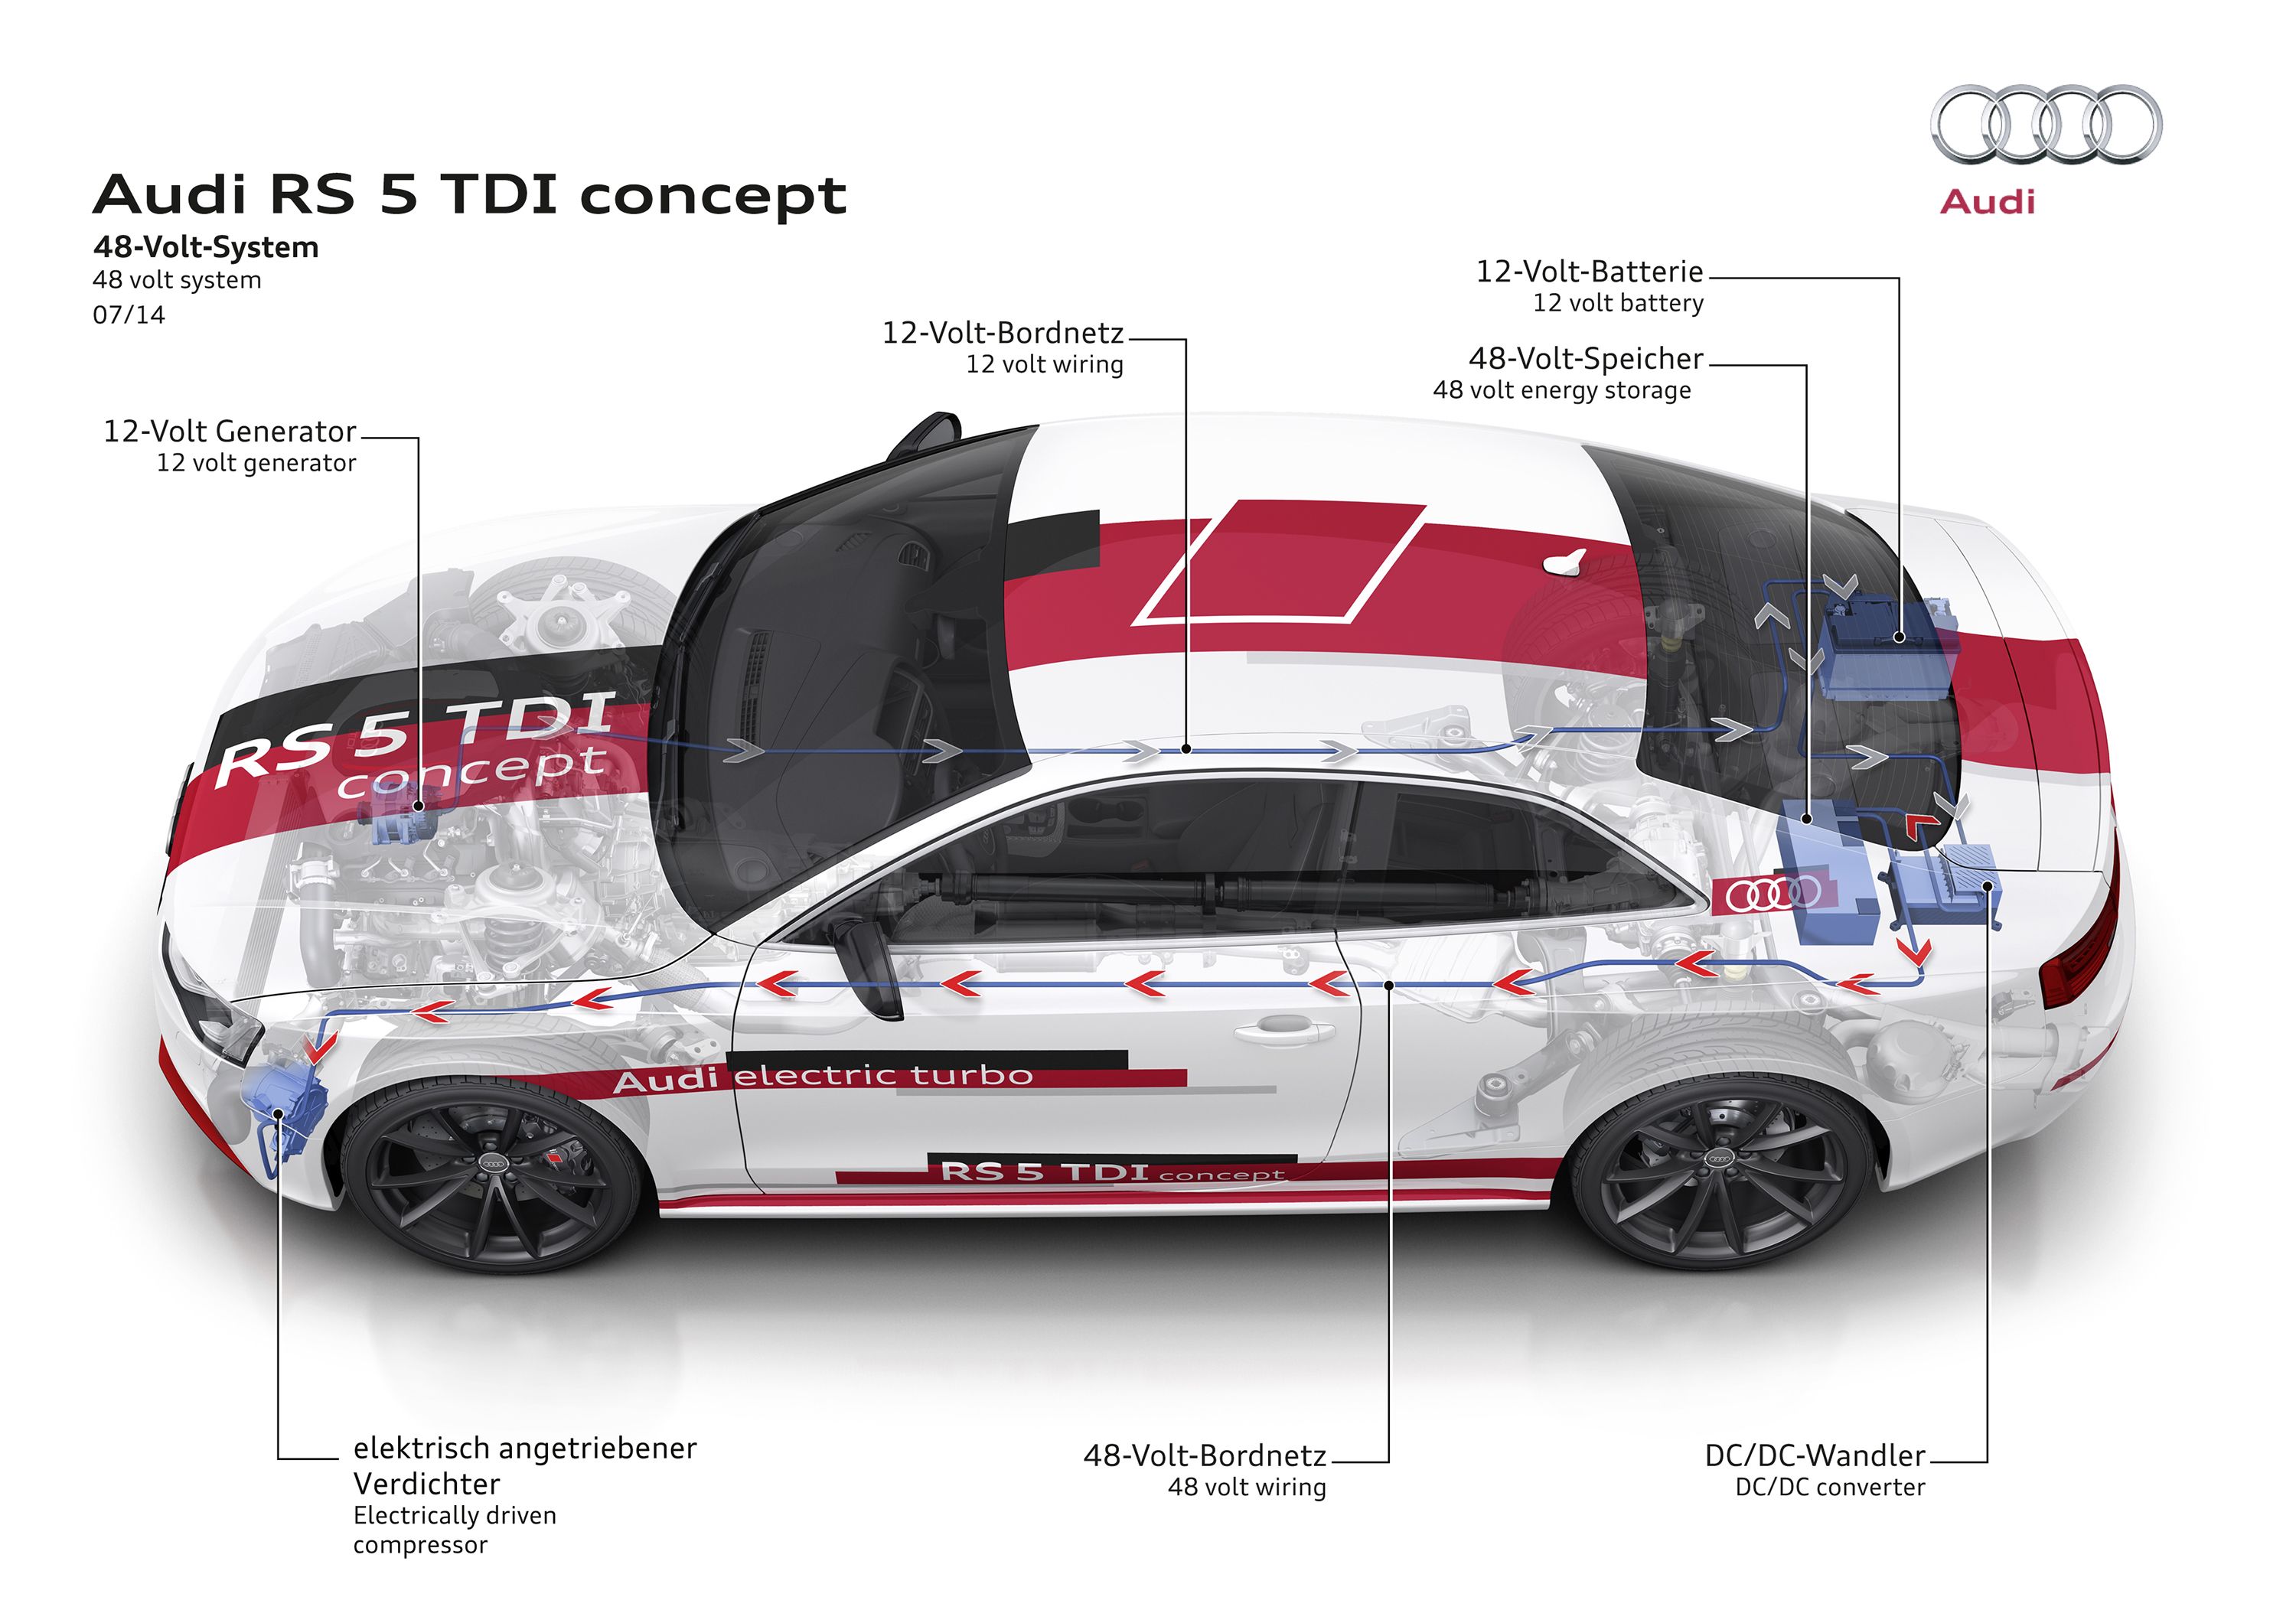 Audi presenta el sistema eléctrico de 48 voltios para sus futuros modelos